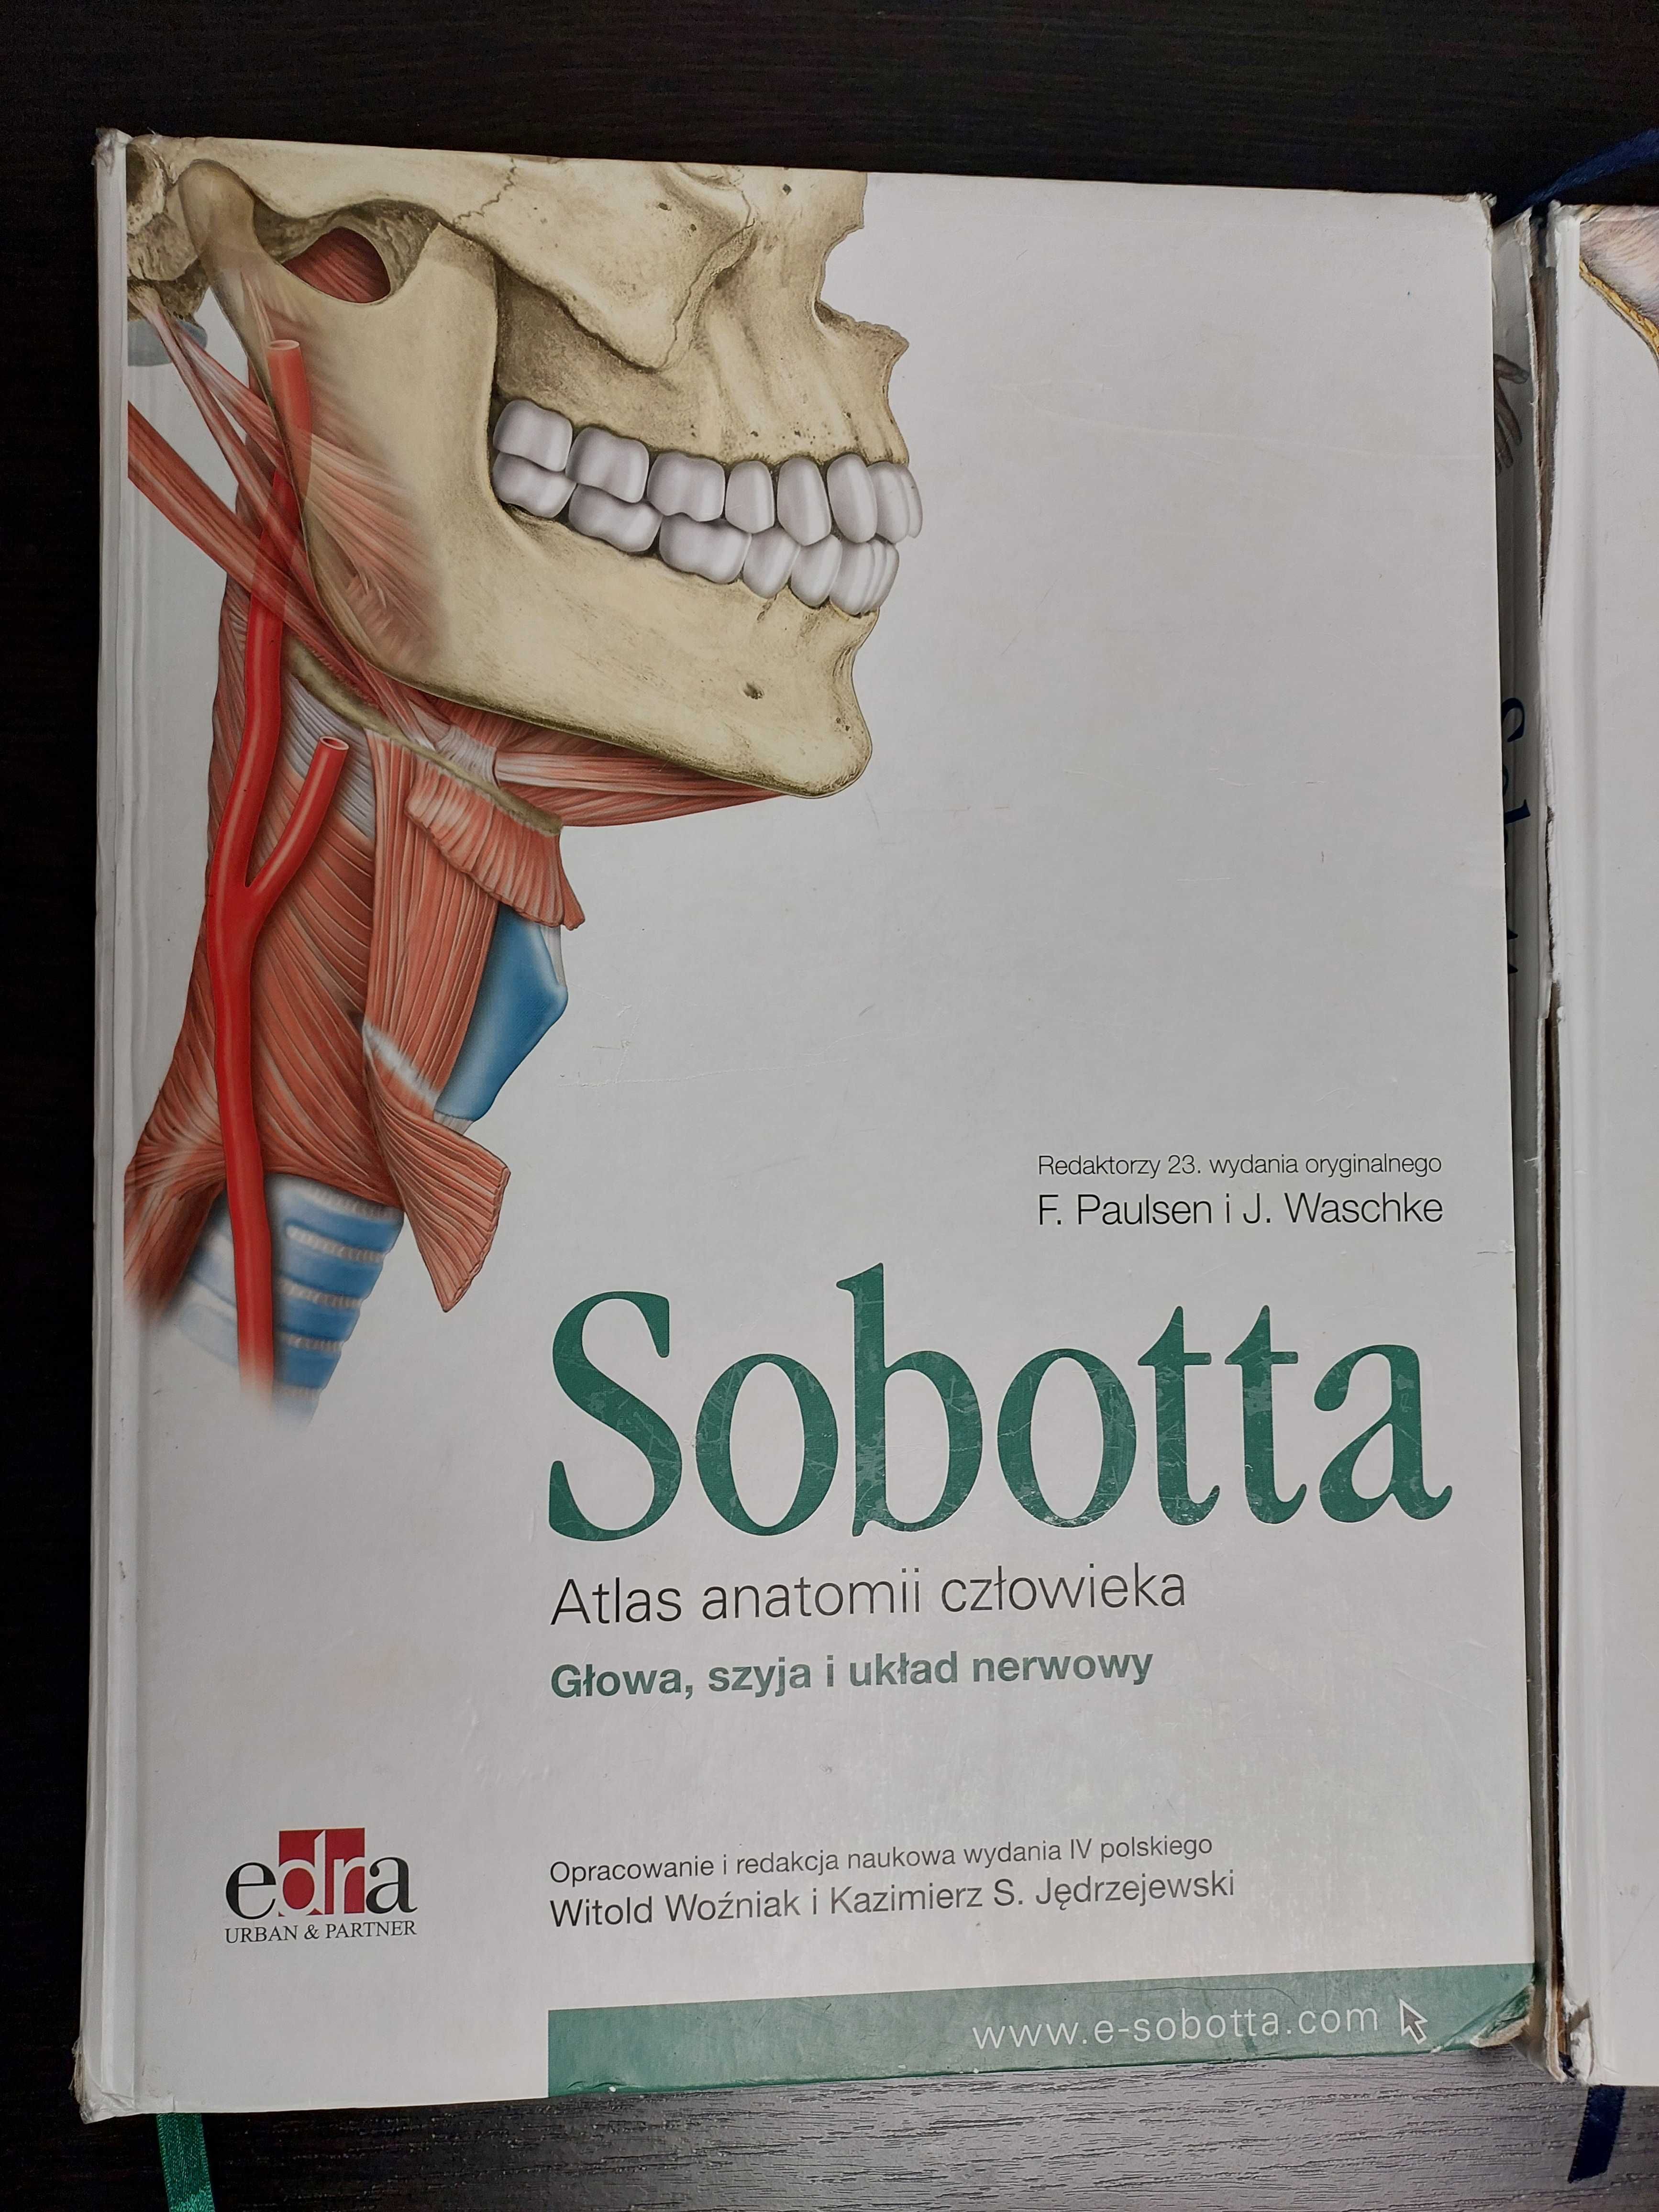 Atlas anatomii człowieka  Sobotta  3 szt